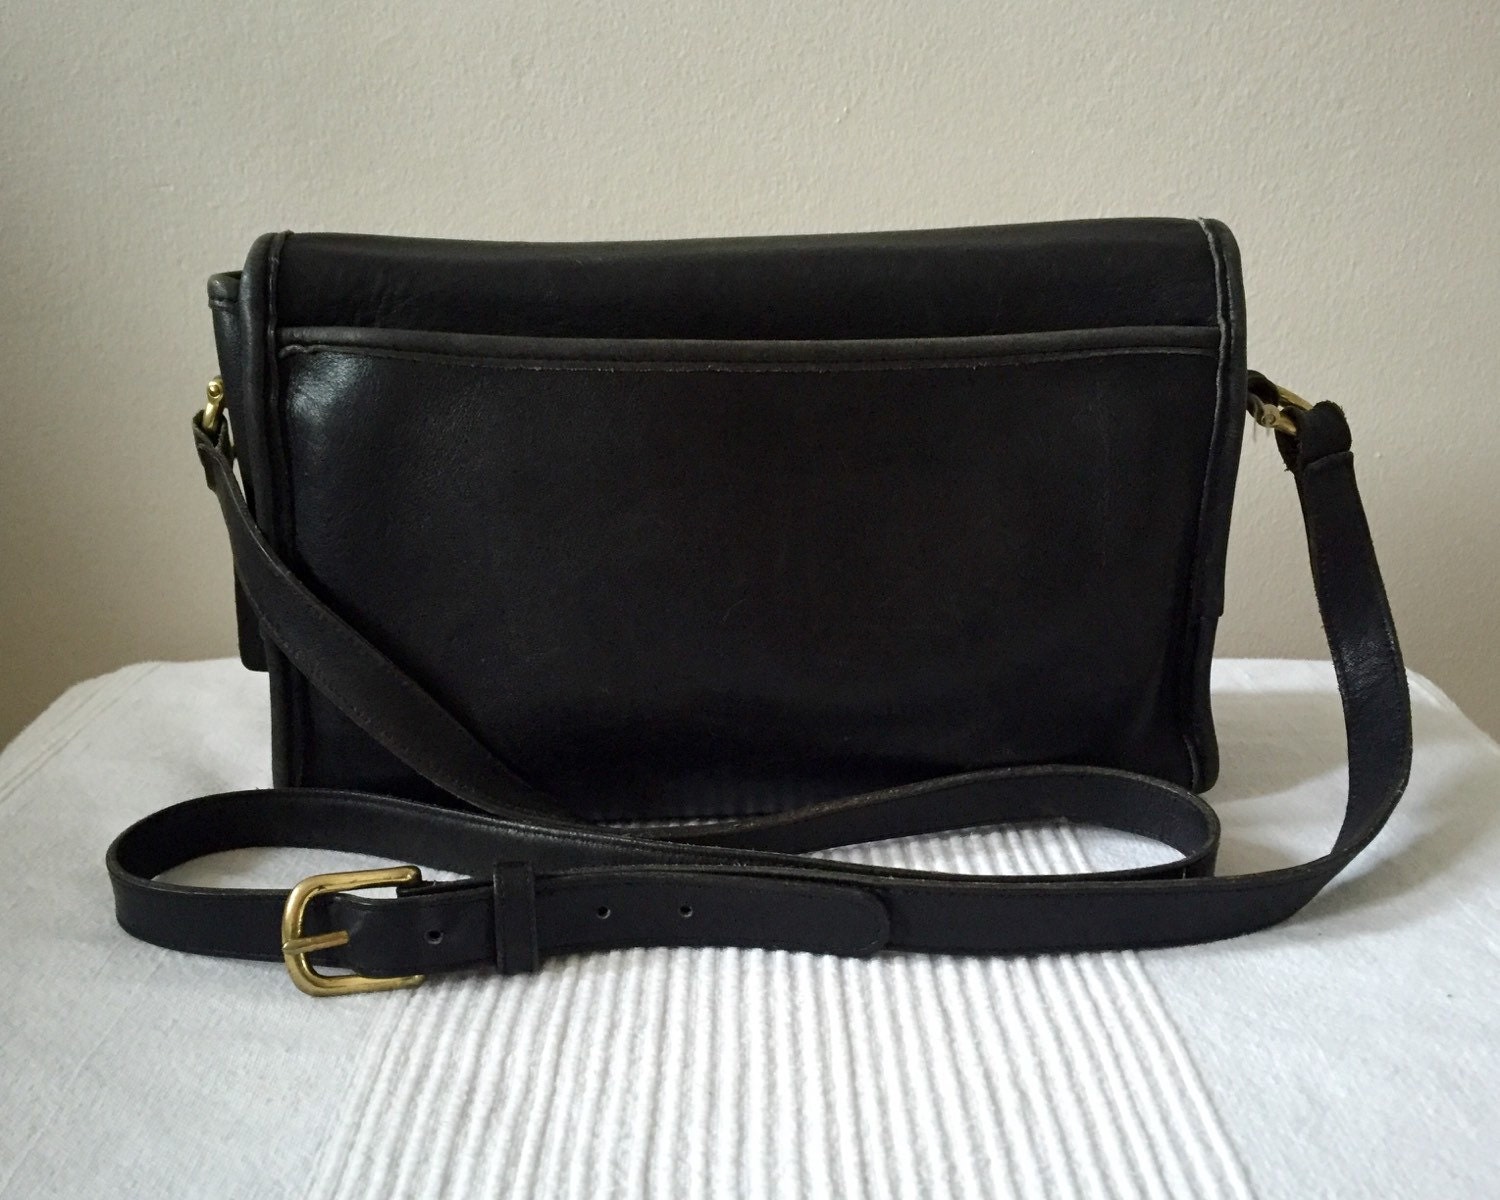 Vintage COACH Black Leather Curtis Bag 9975 Flap Over Shoulder